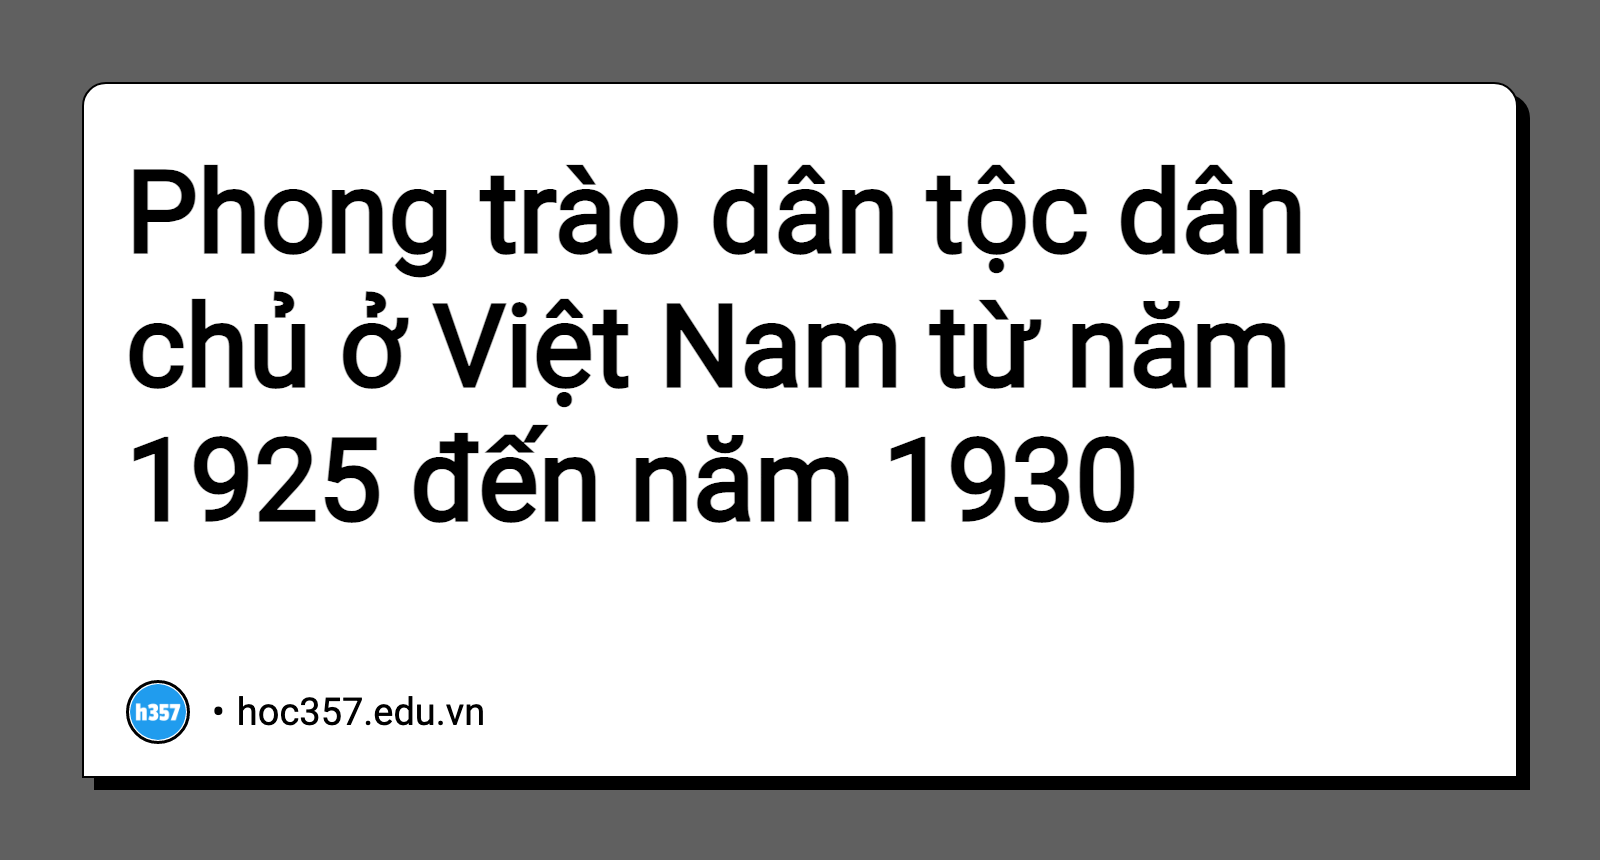 Hình minh họa Phong trào dân tộc dân chủ ở Việt Nam từ năm 1925 đến năm 1930